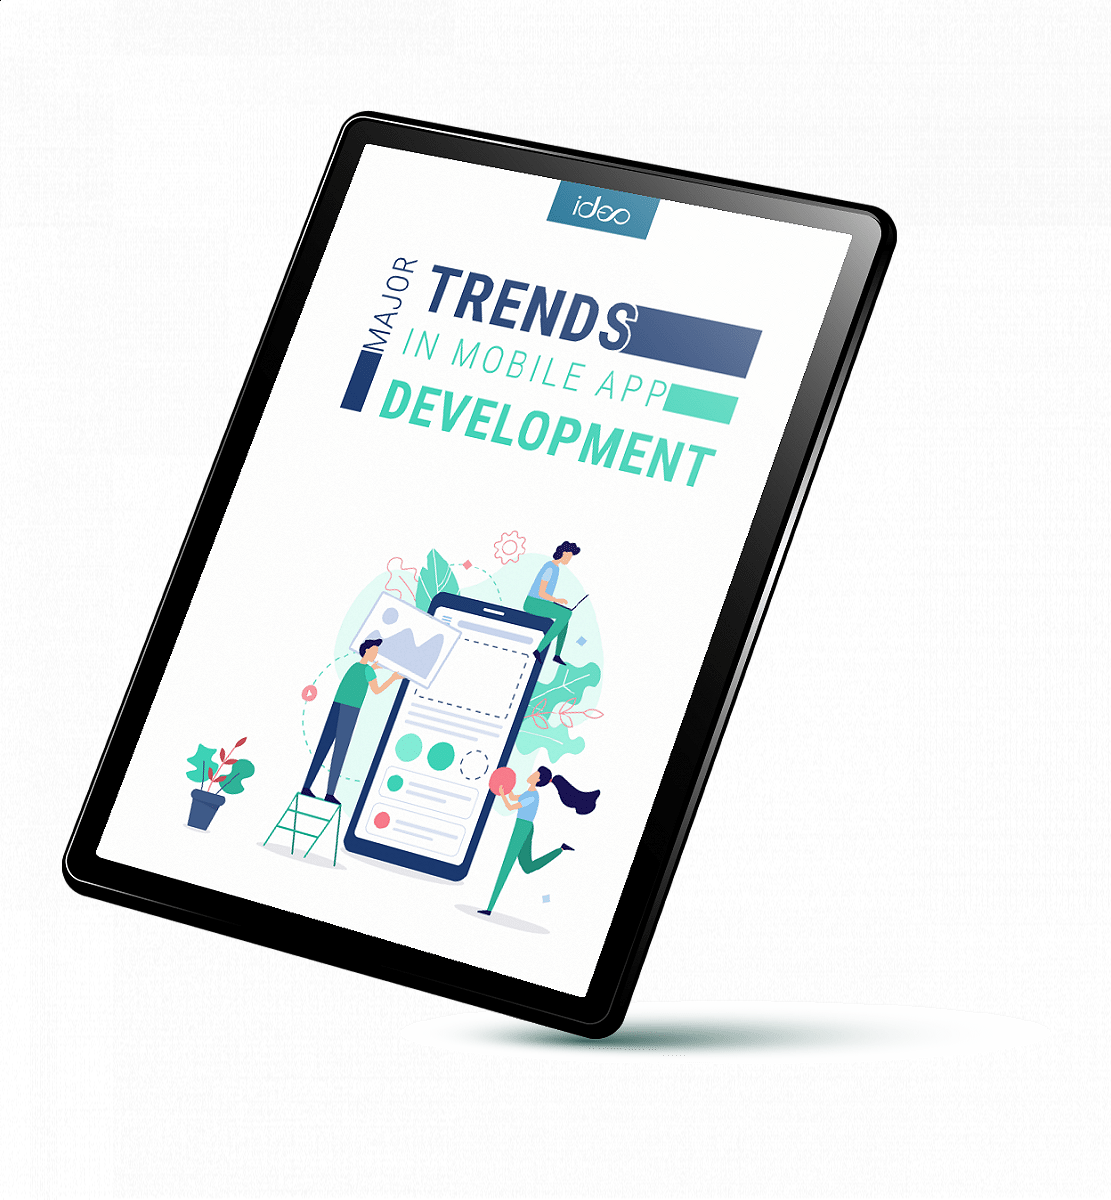 Major Trends in Mobile App Development baner.png [18.31 KB]